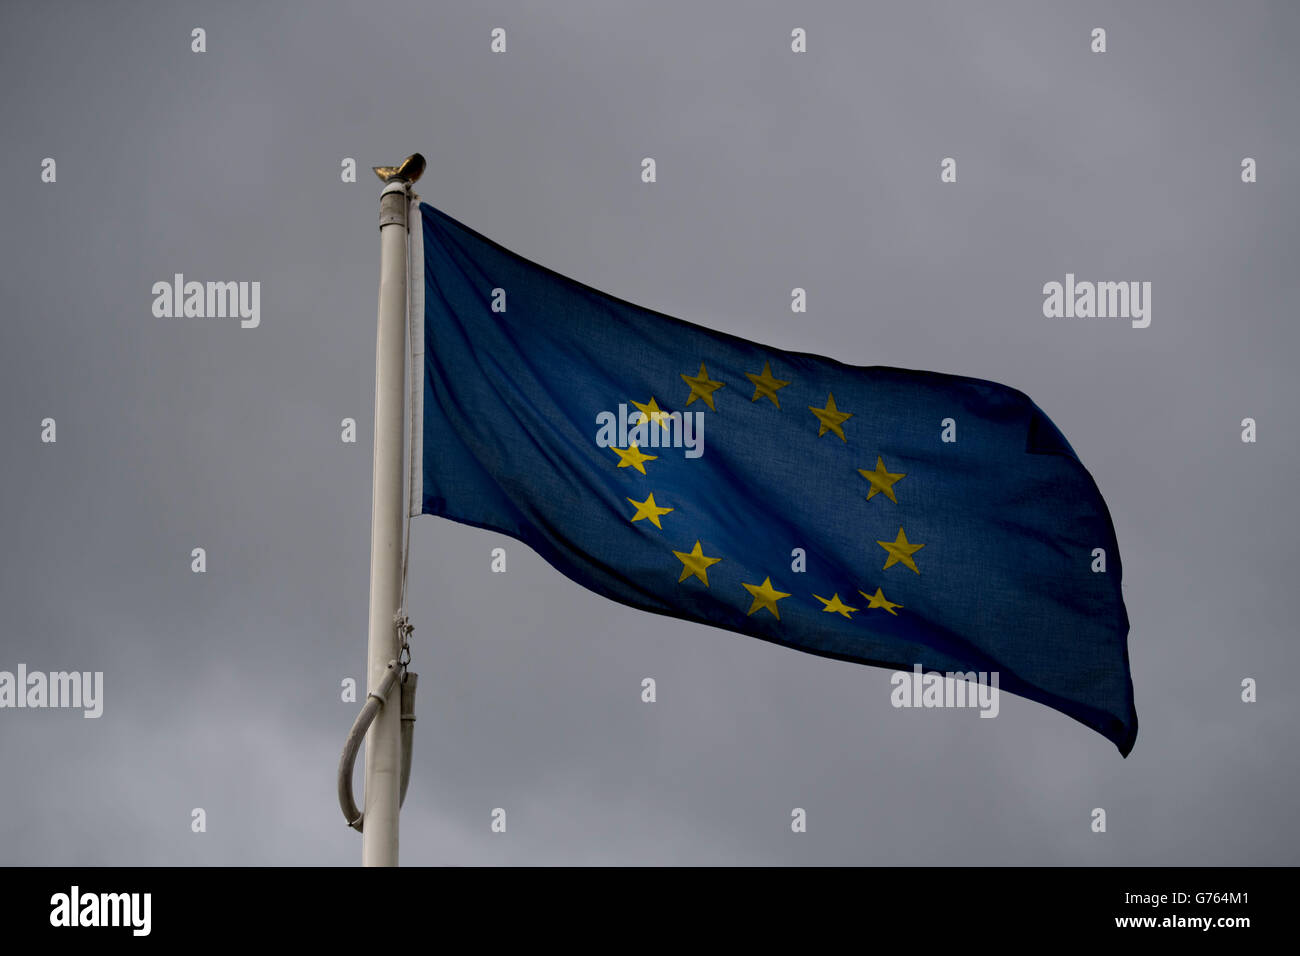 Unión Europea (UE) bandera ondeando al viento con nubarrones detrás. Gran Bretaña salió de la UE en un referendo reciente. Foto de stock